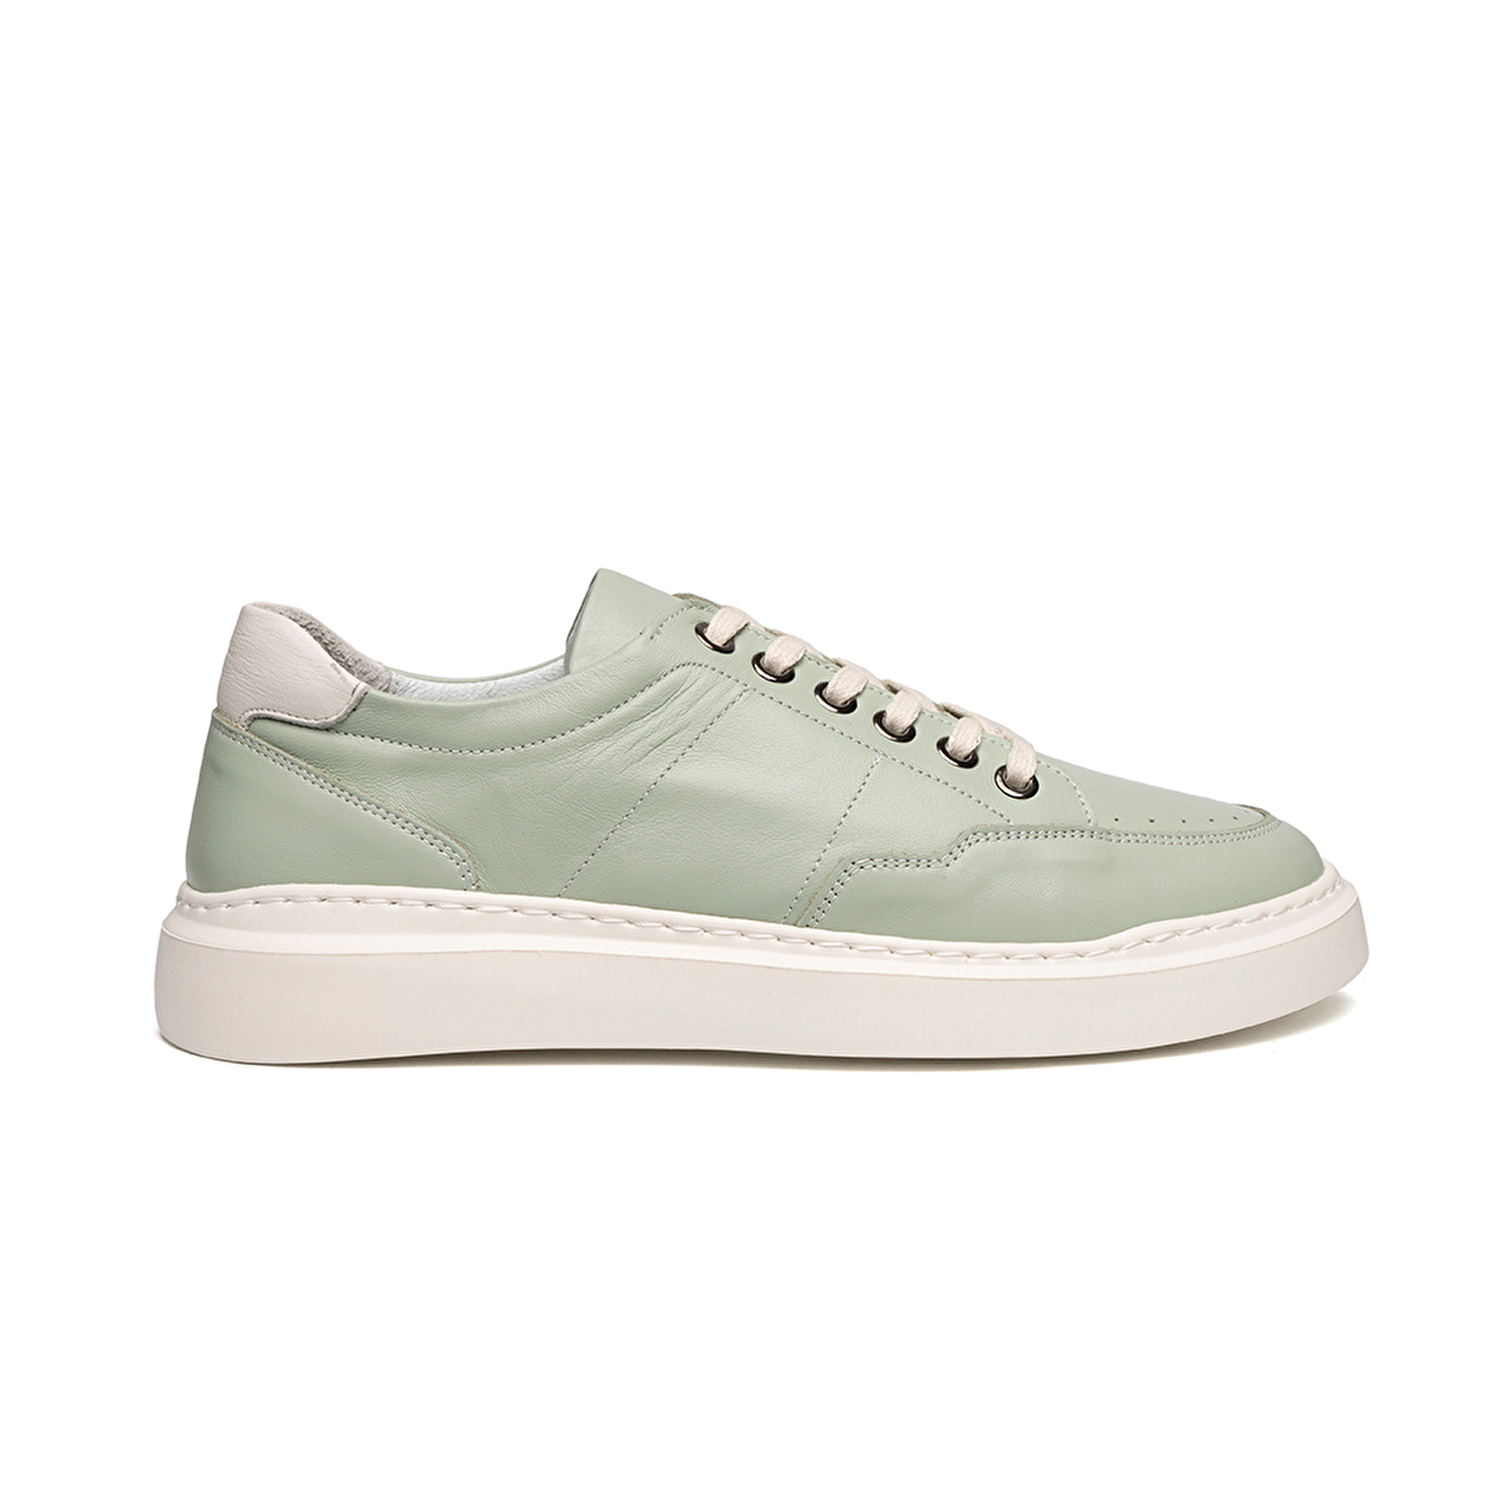 Kadın Açık Yeşil Hakiki Deri Sneaker Ayakkabı 2Y2SA57922-1